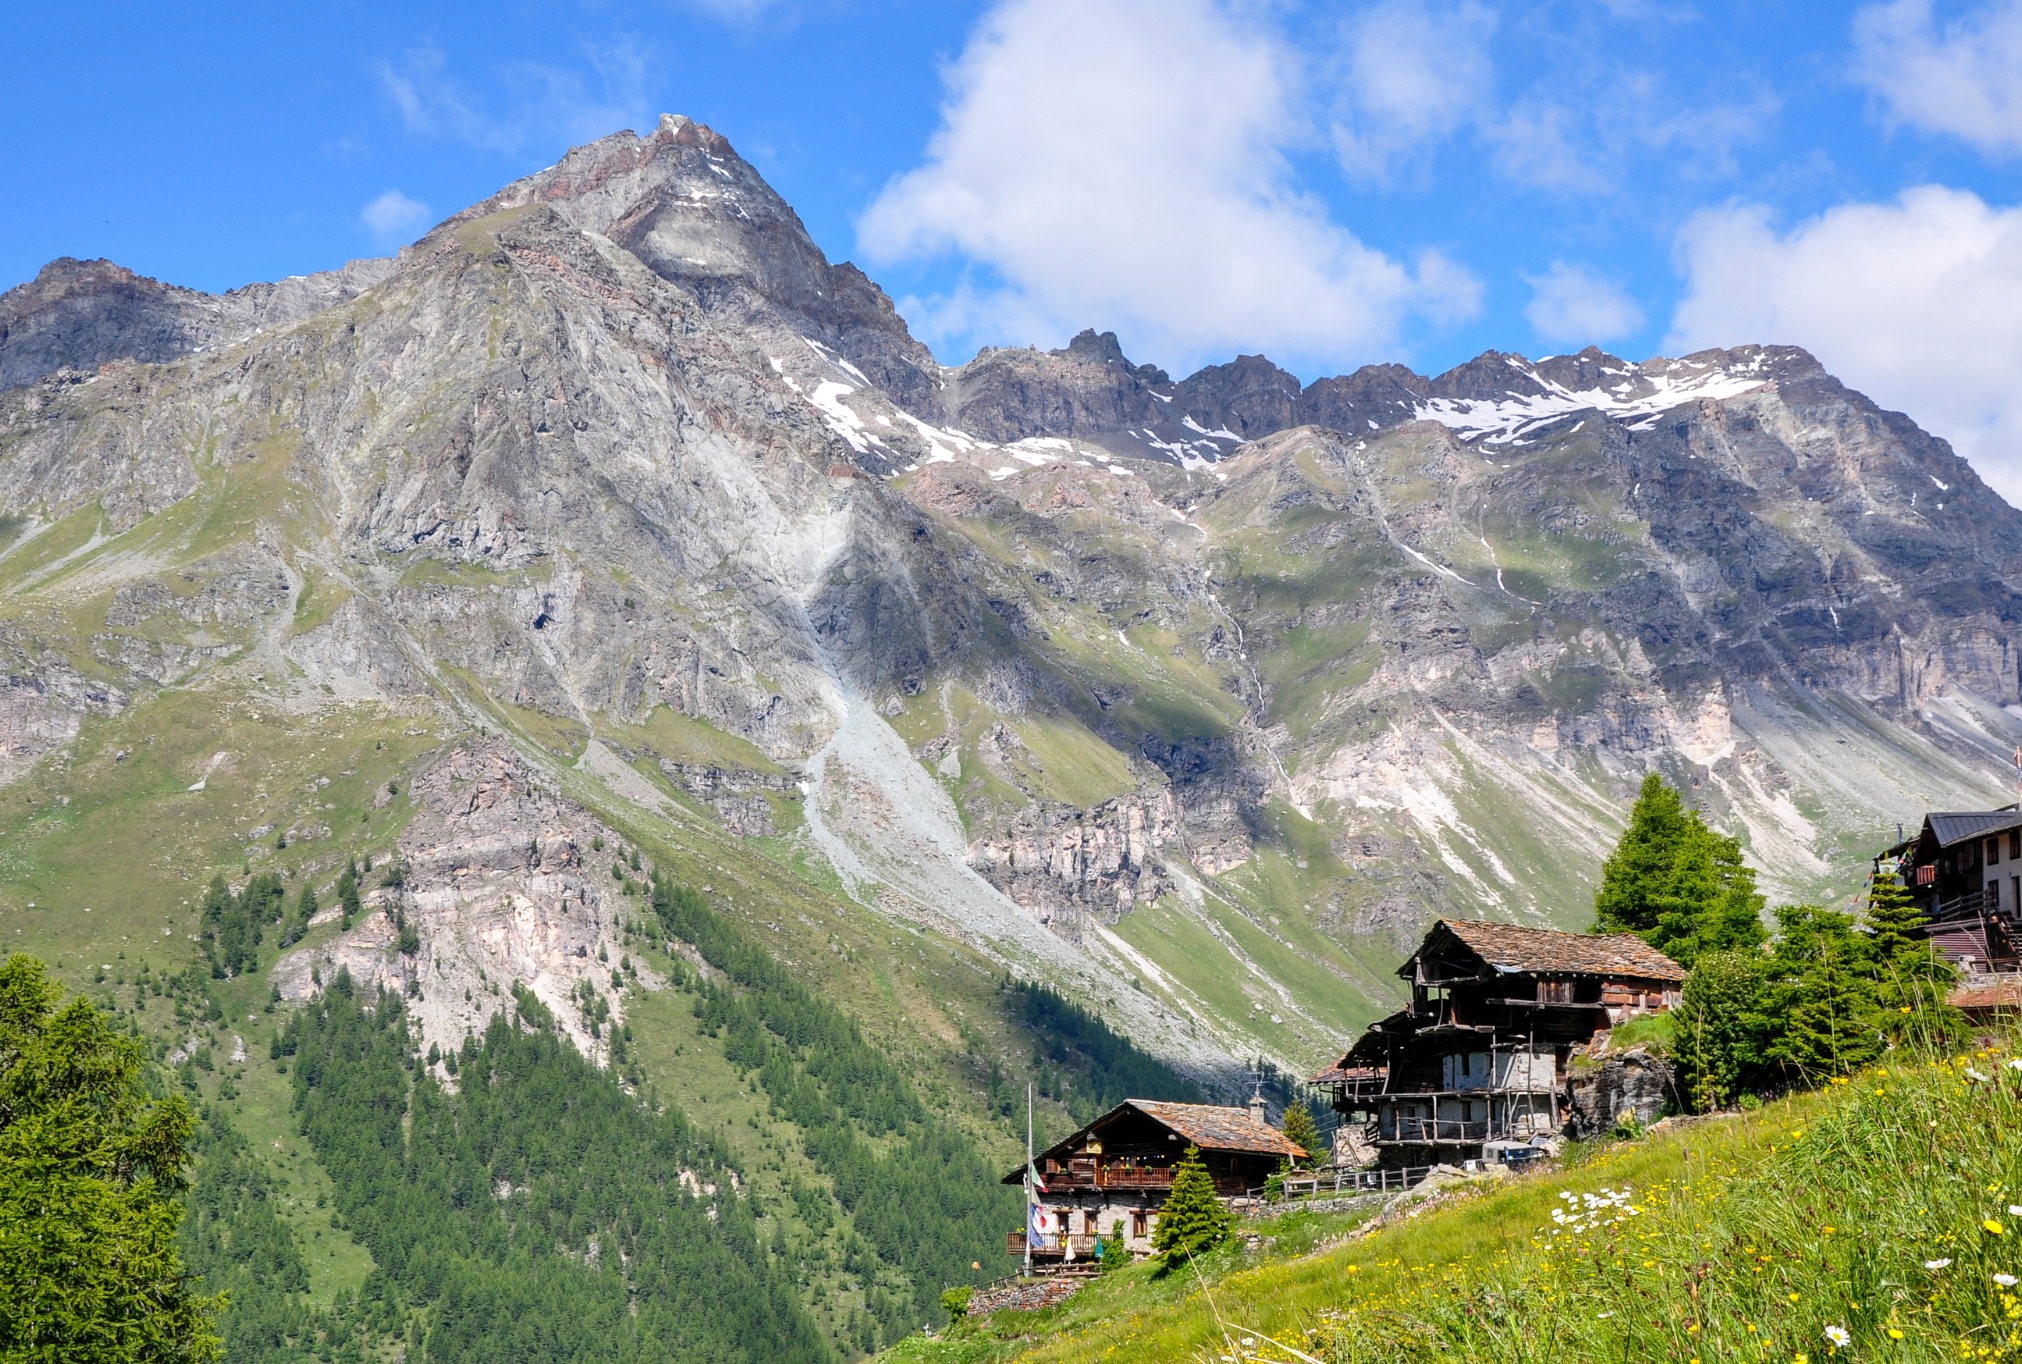 Resy, Aosta Valley, Italy
Canva: MAC_zAY5zNI